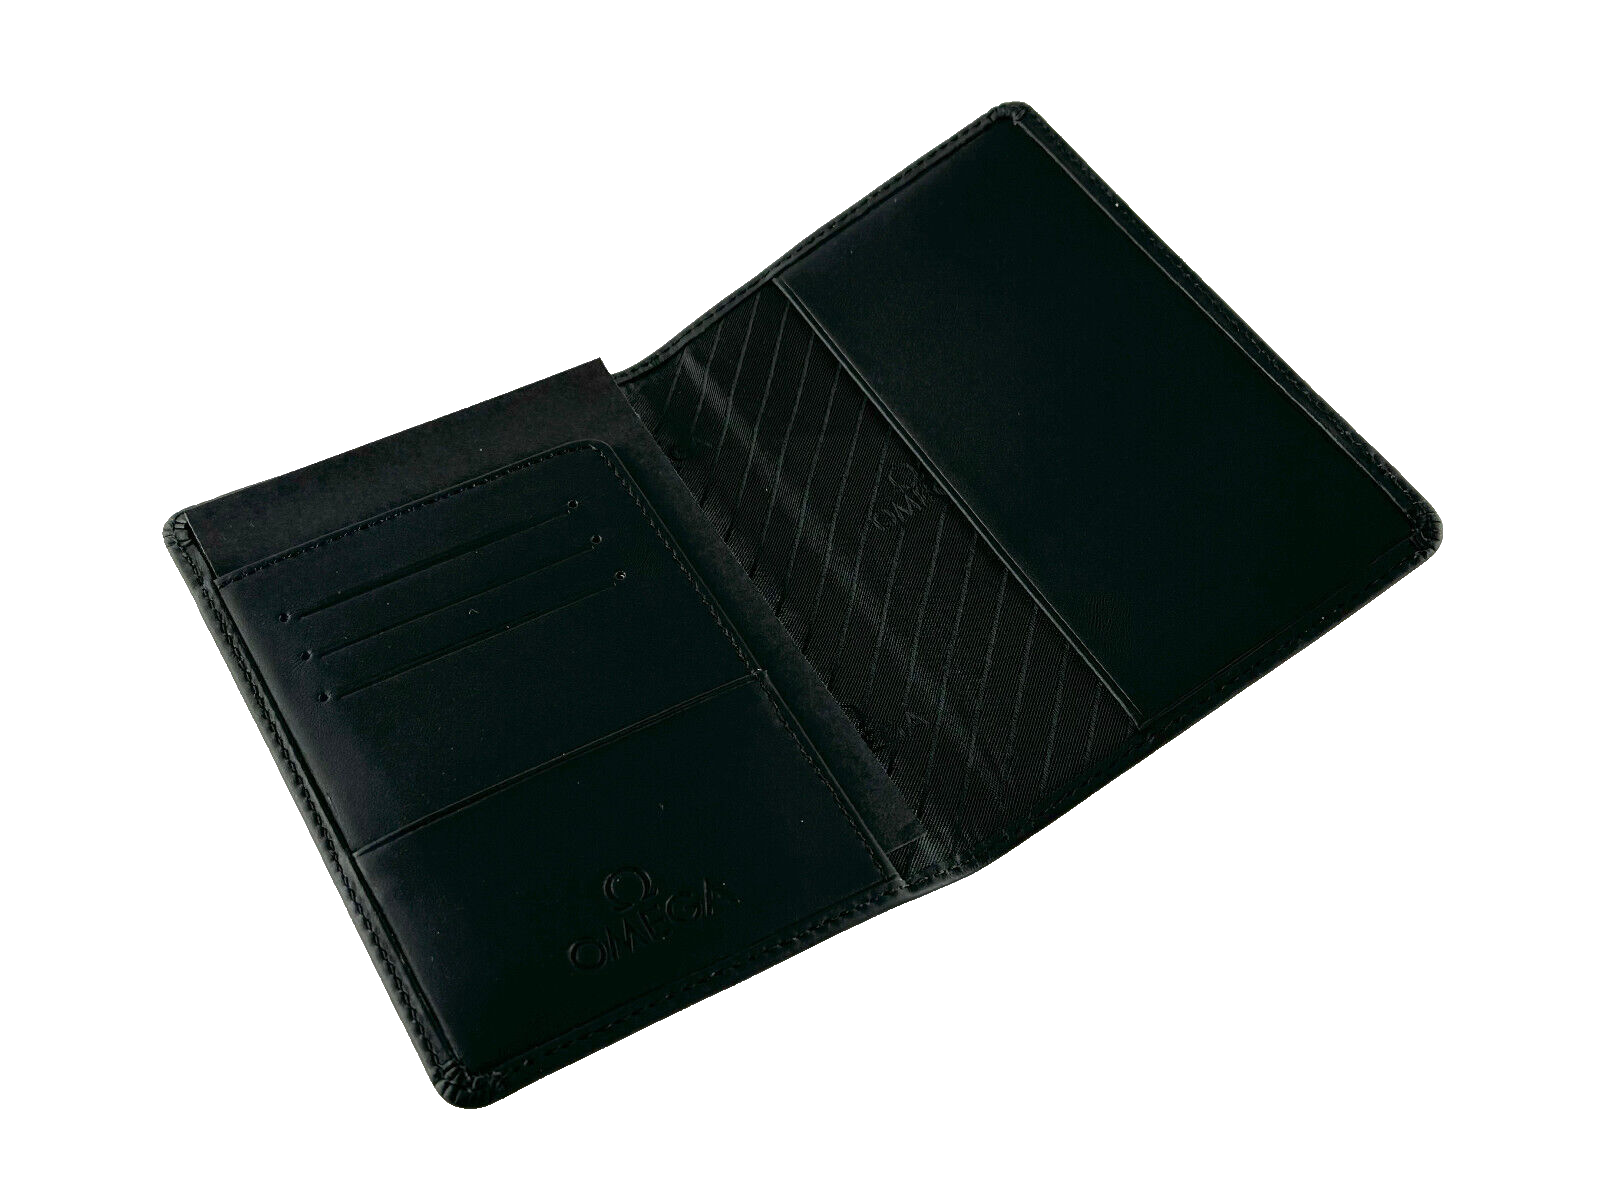 Omega card holder wallet black